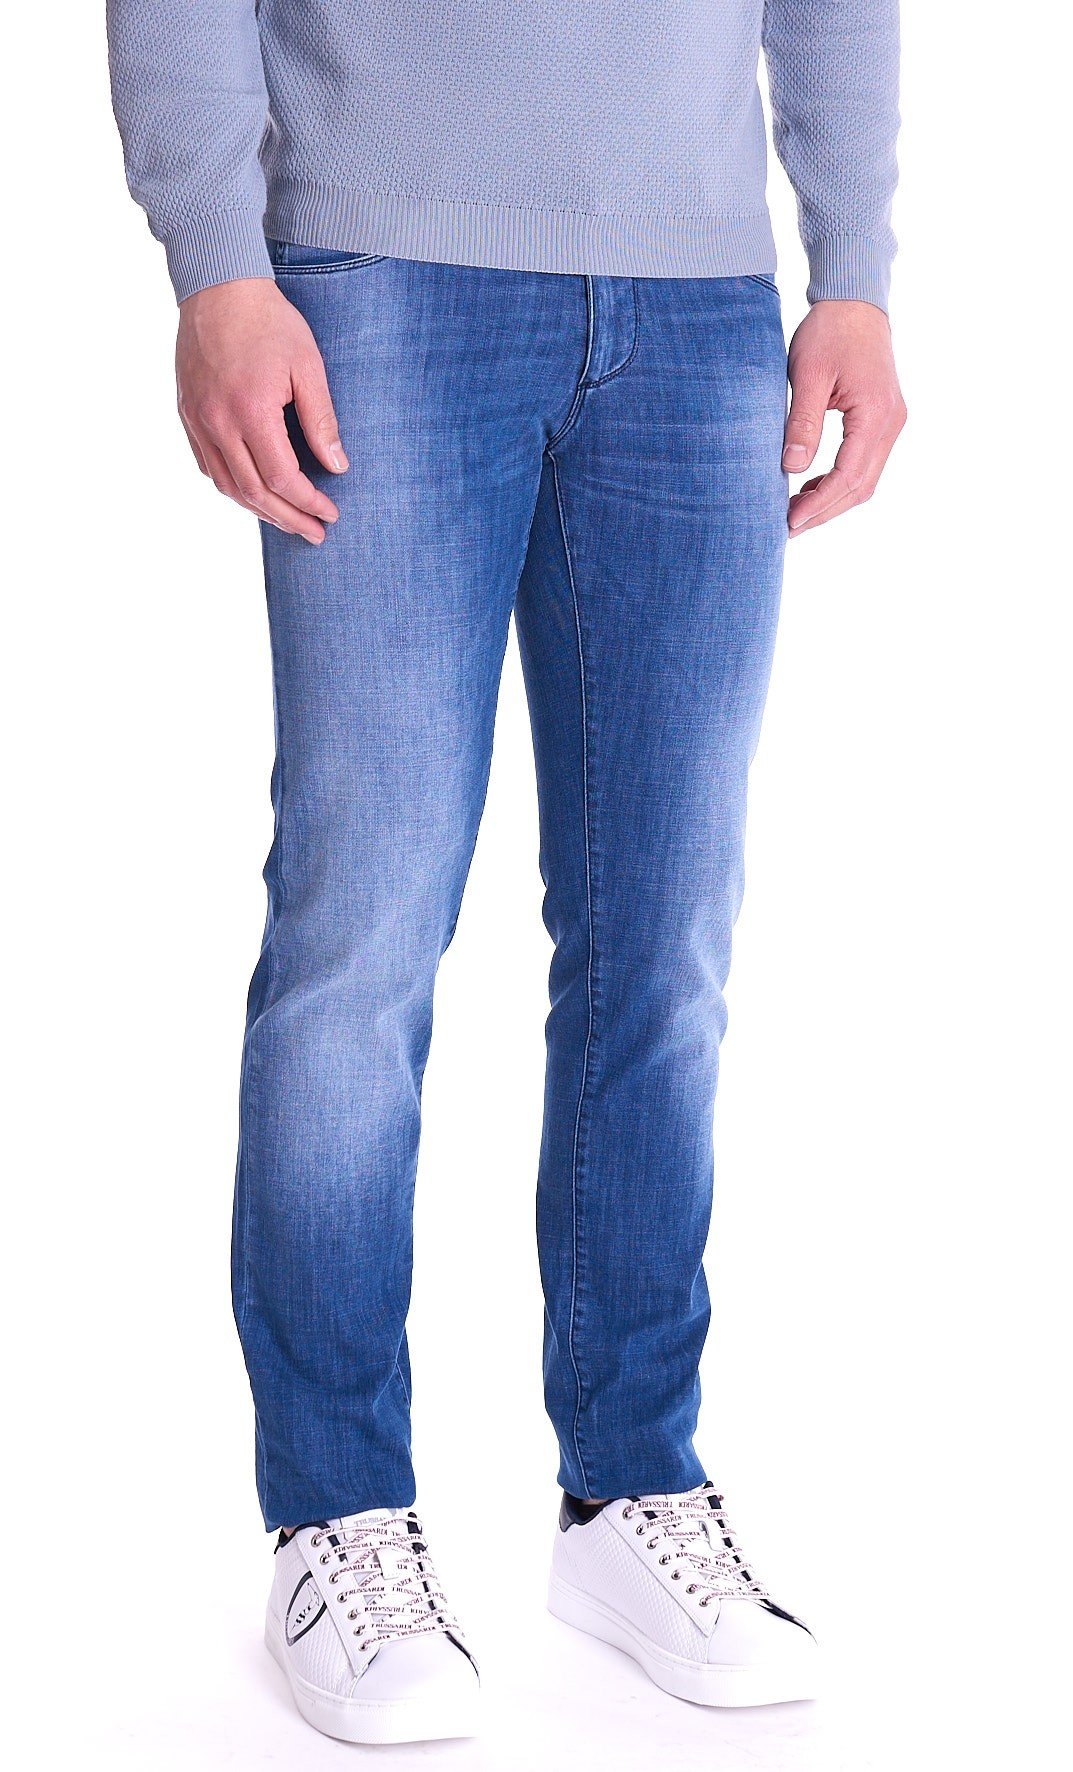 Men's Trussardi jeans 370 close washed denim super stretch blue